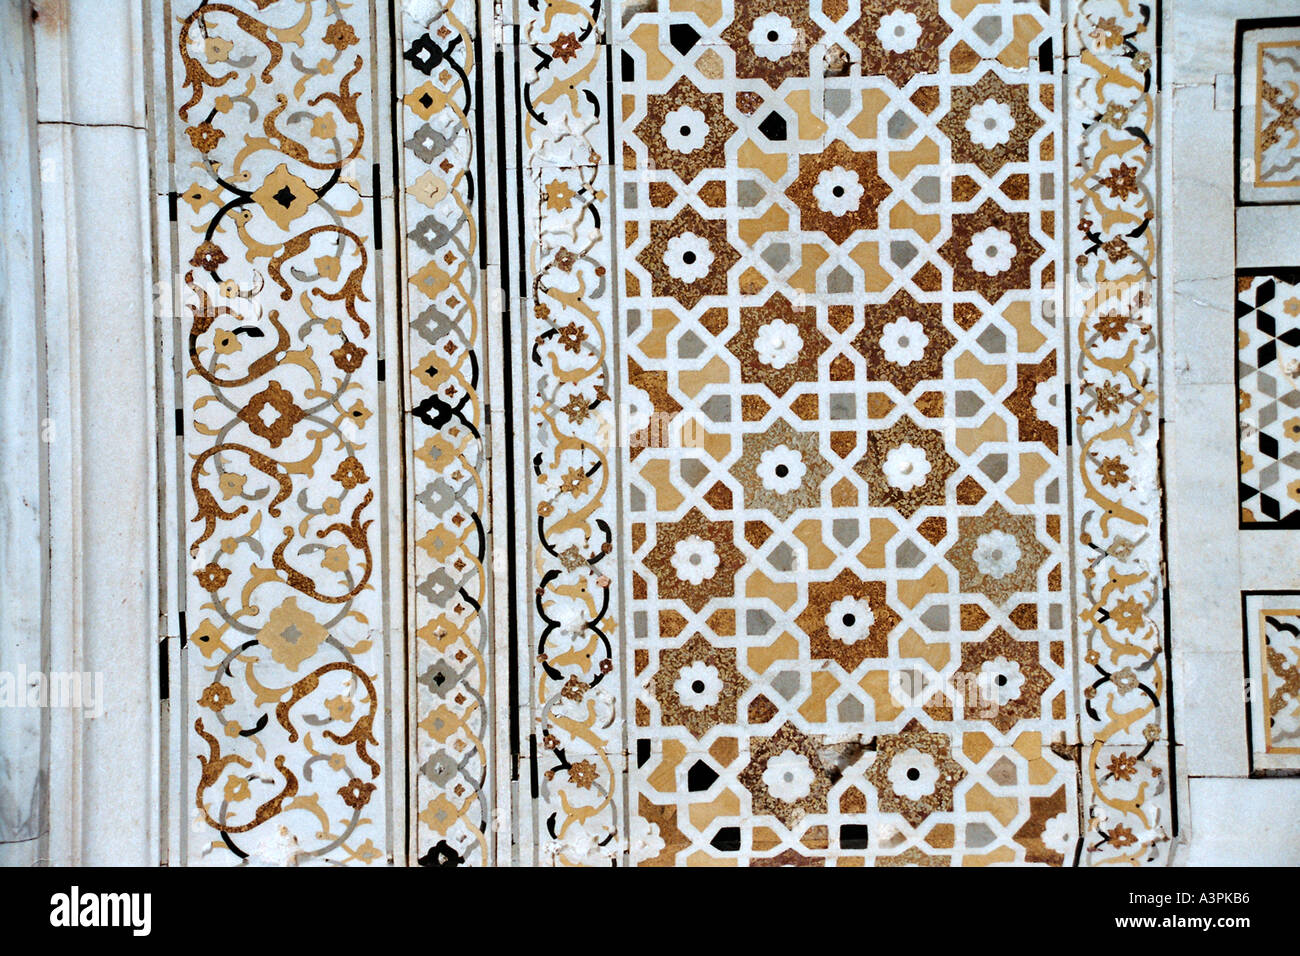 Pietra dura marble inlaid with semi precious stones on the Itimad ud Daulah or Baby Taj Uttar Pradesh India Stock Photo